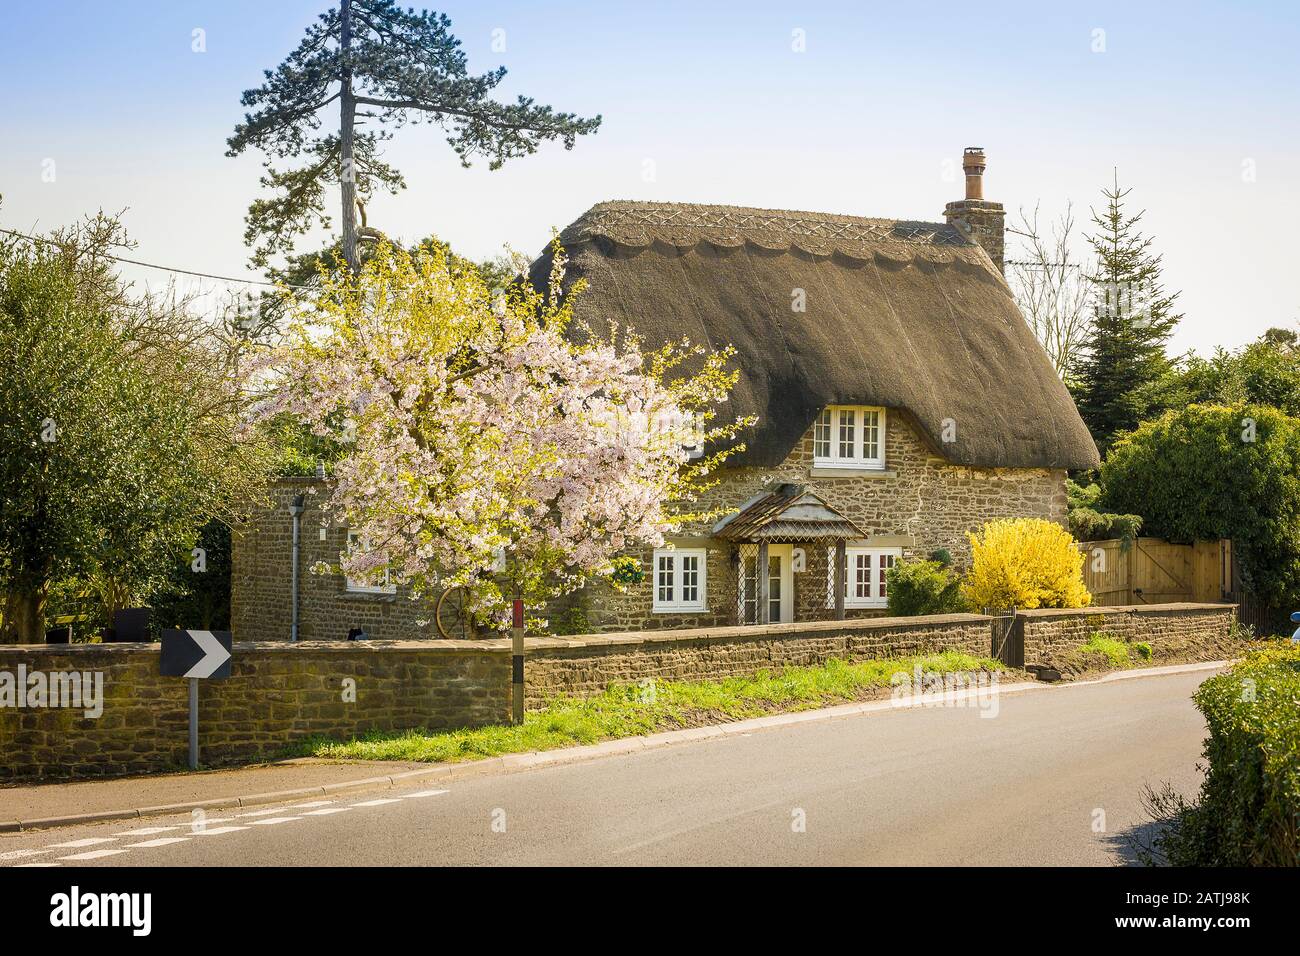 Wans North Cottage Sandy Lane Chippenham Wiltshire Angleterre Royaume-Uni au printemps avec fleurs et Forsythia en fleur Banque D'Images